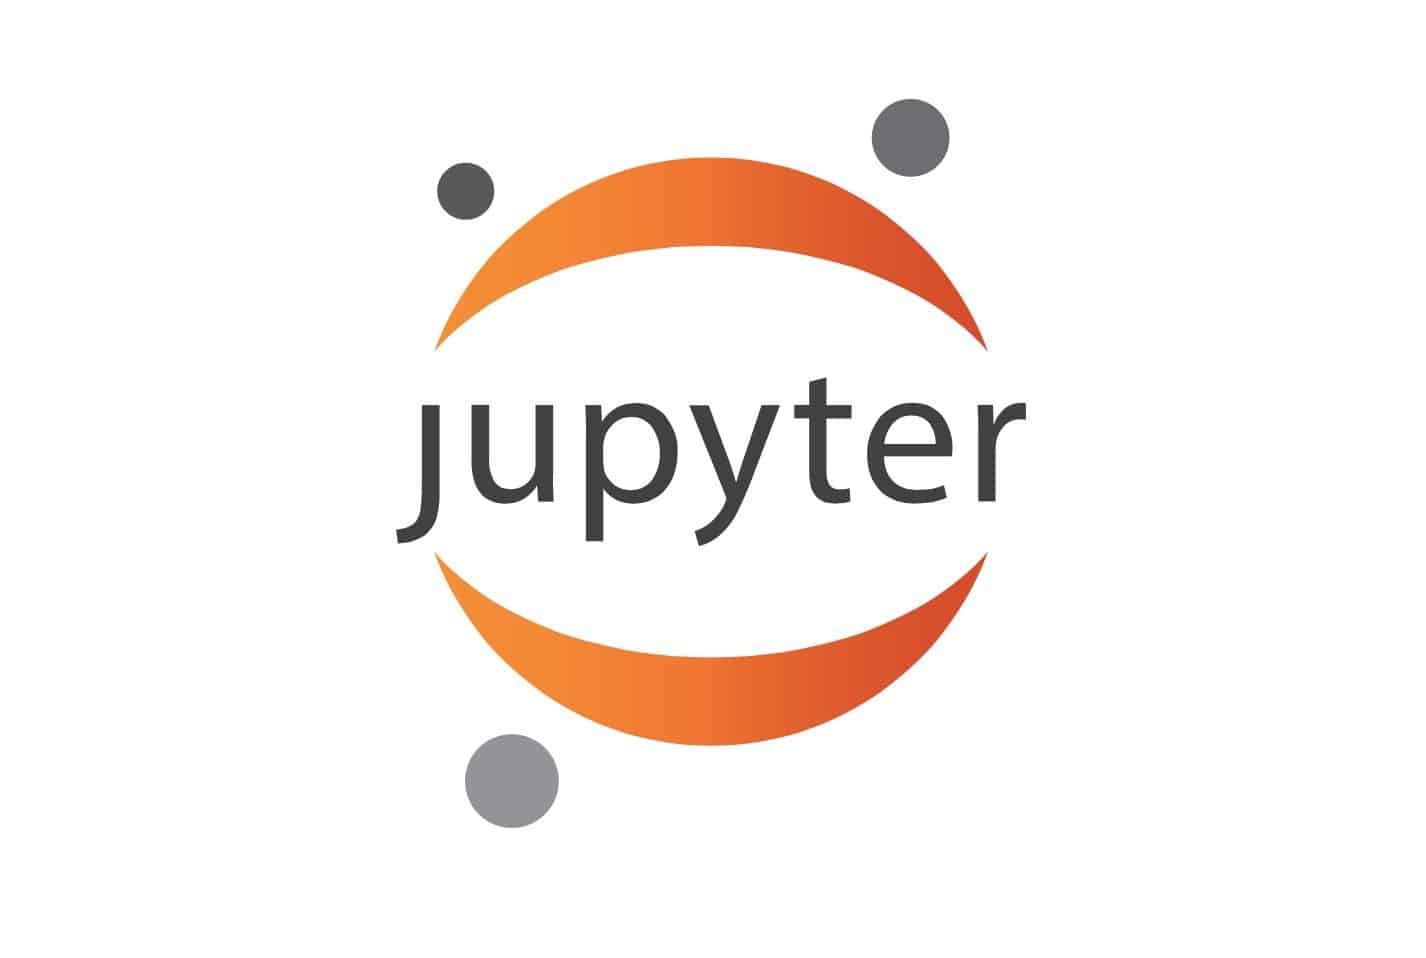 Jupyter-notebook